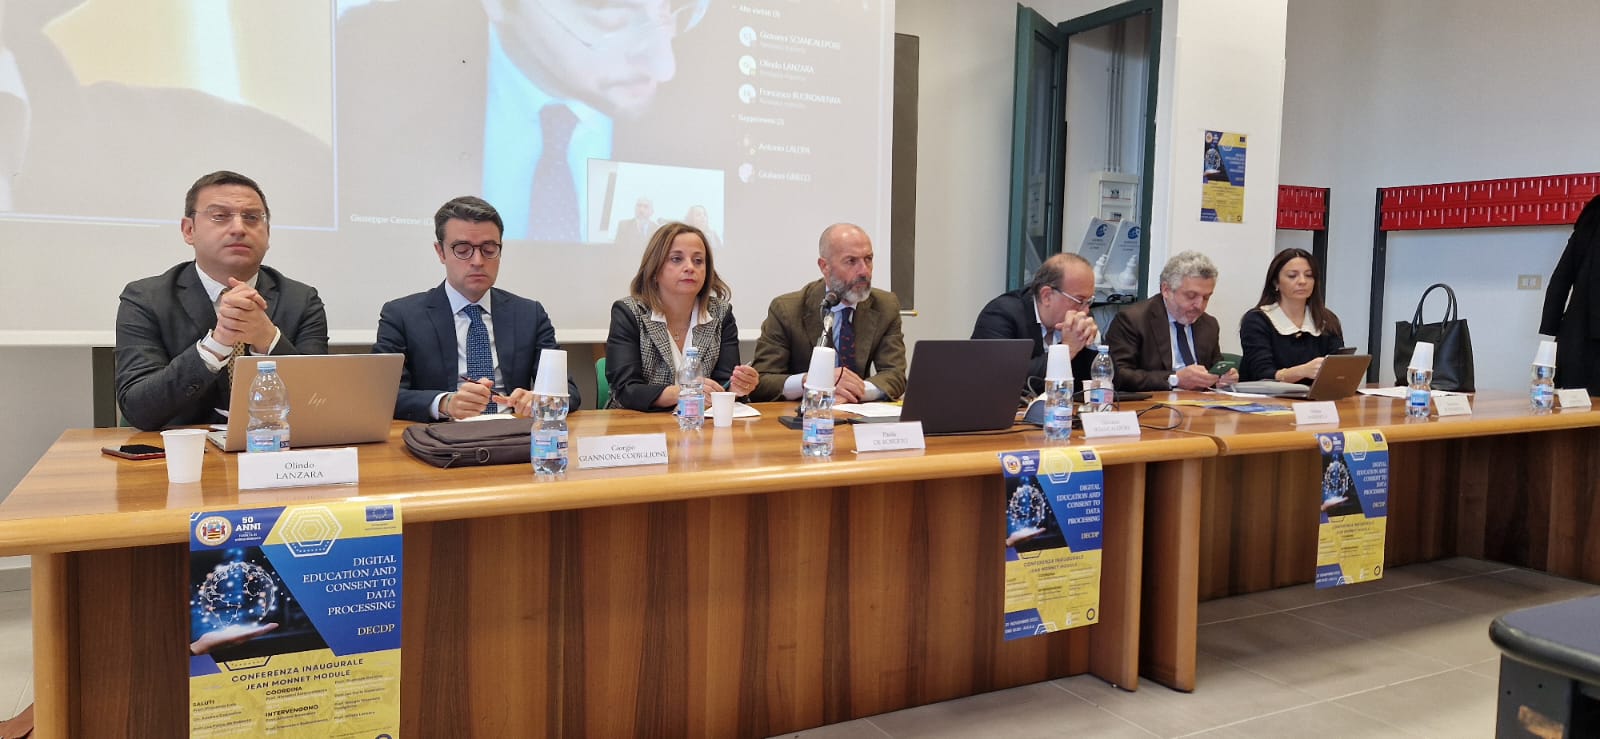 Salerno: Ateneo, Educazione digitale e consenso trattamento dati, presentato Jean Monnet Module